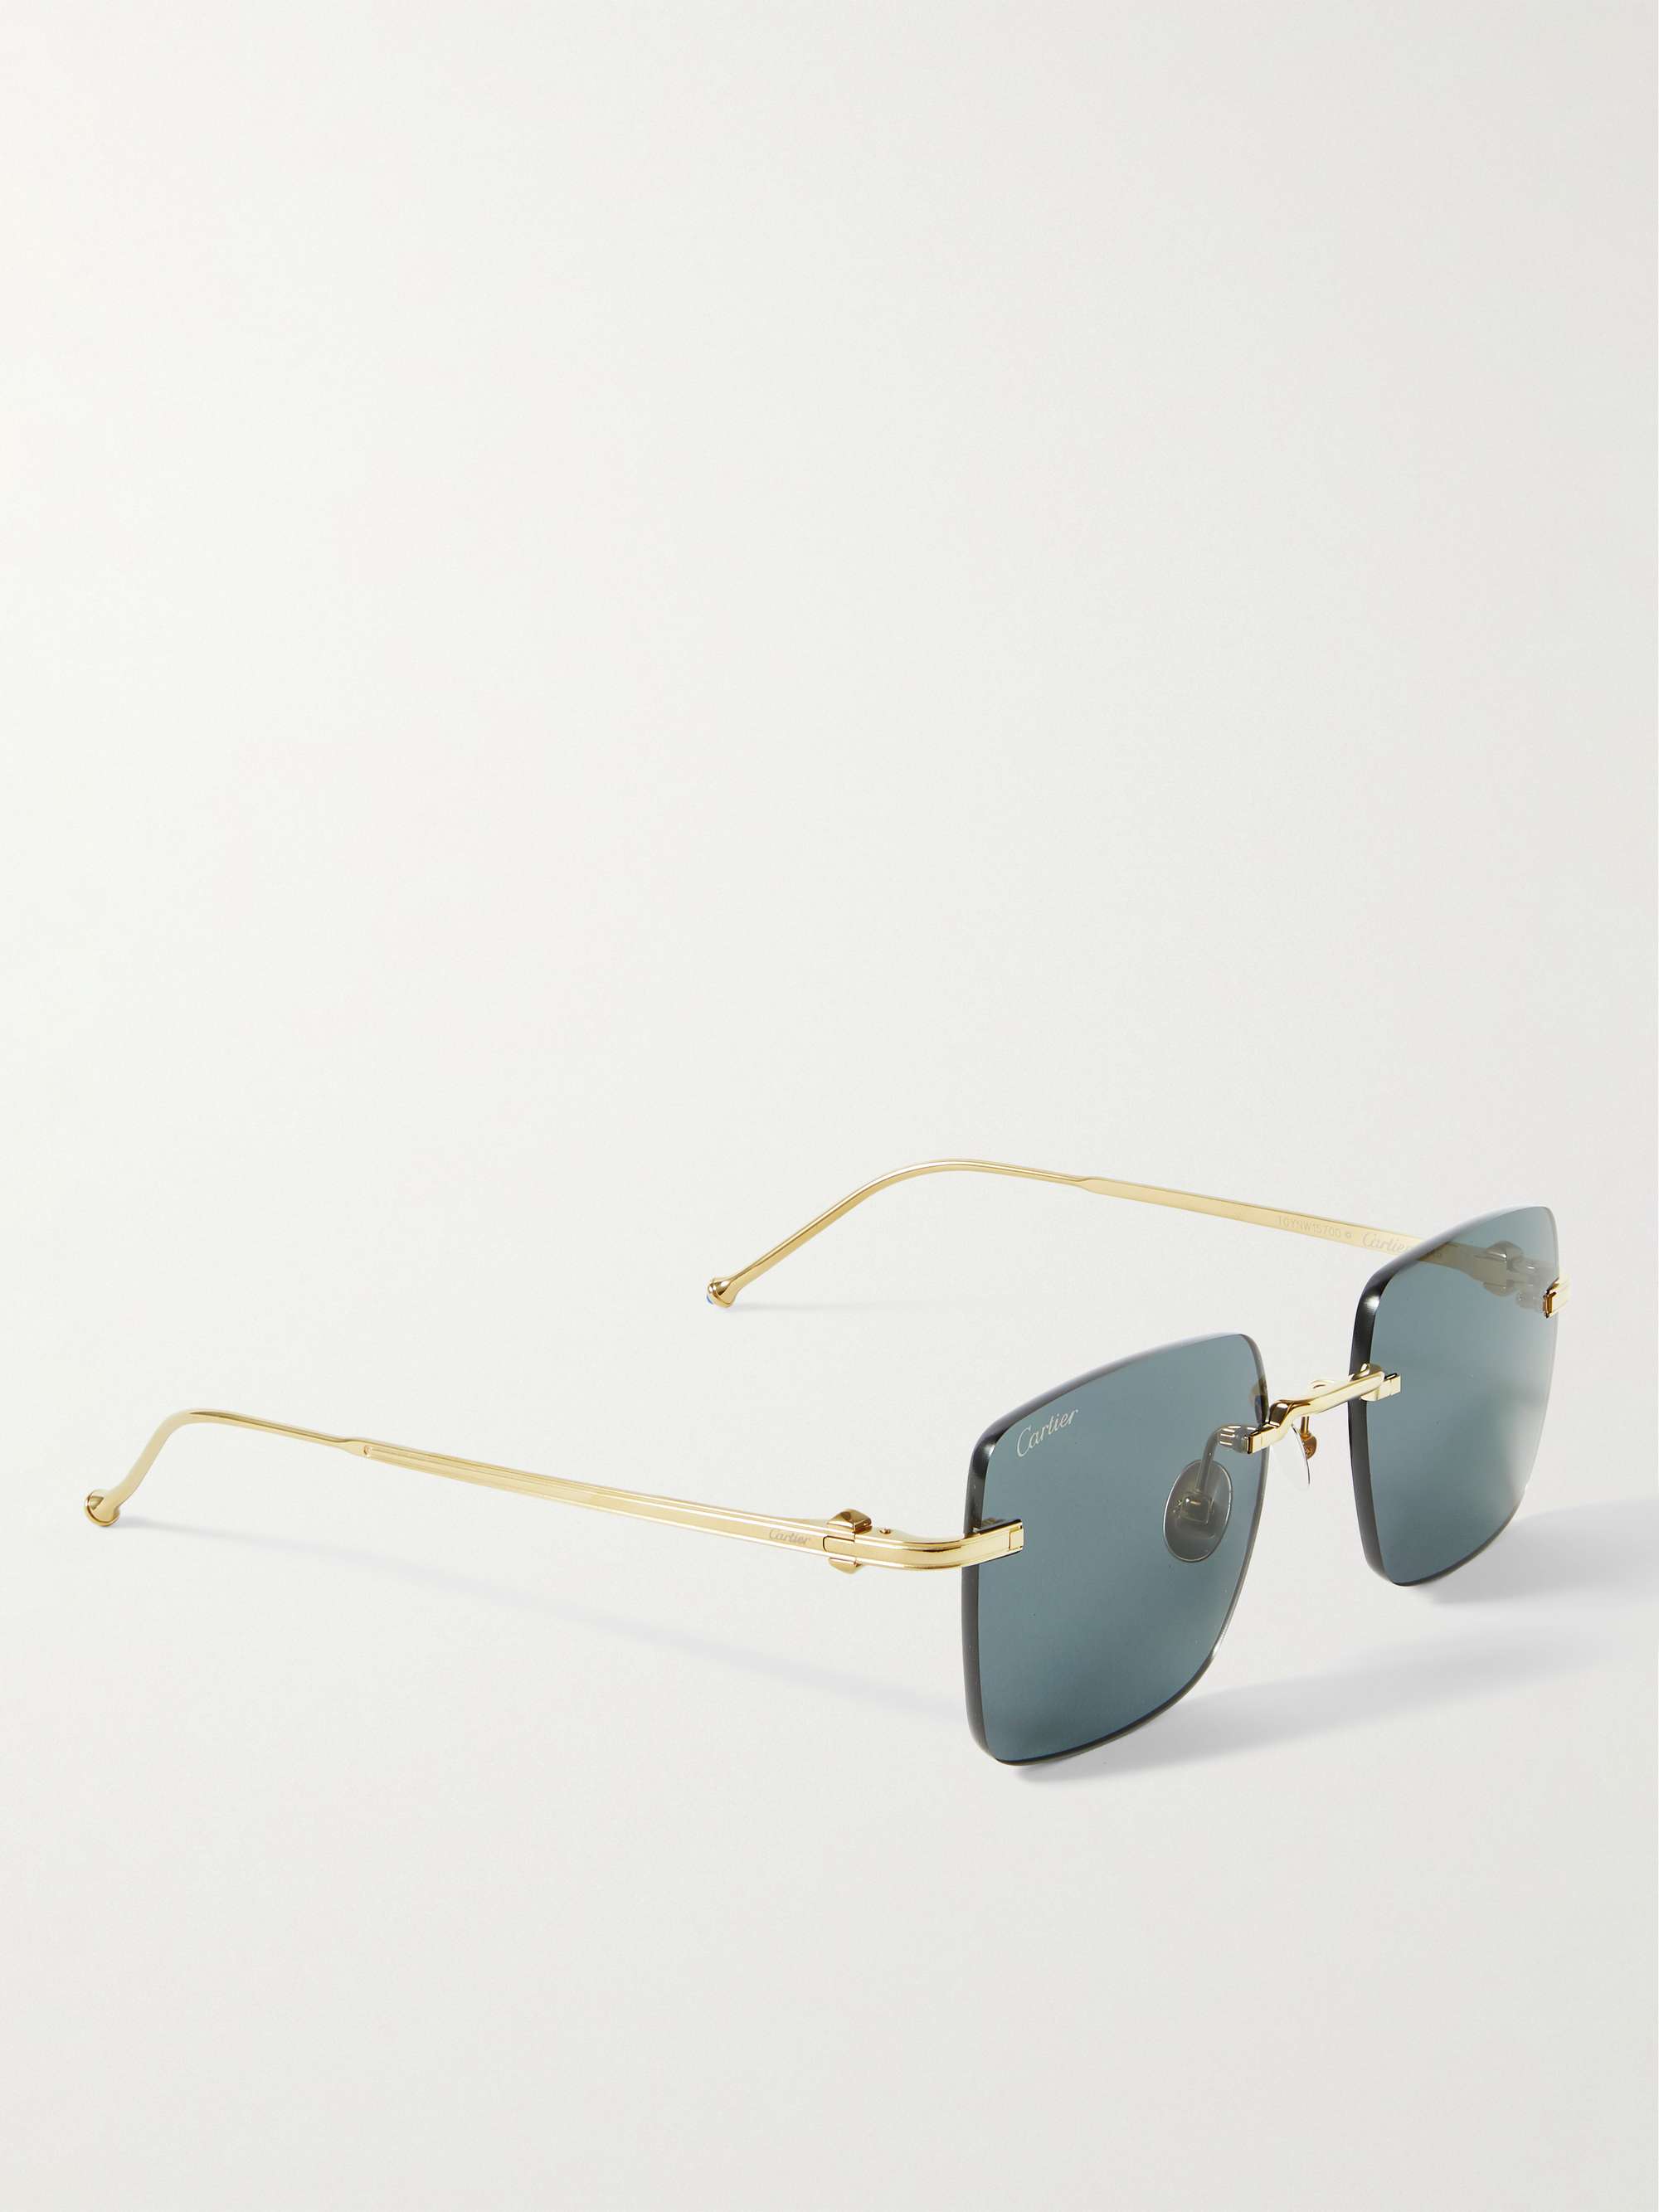 CARTIER EYEWEAR Frameless Gold-Tone Sunglasses